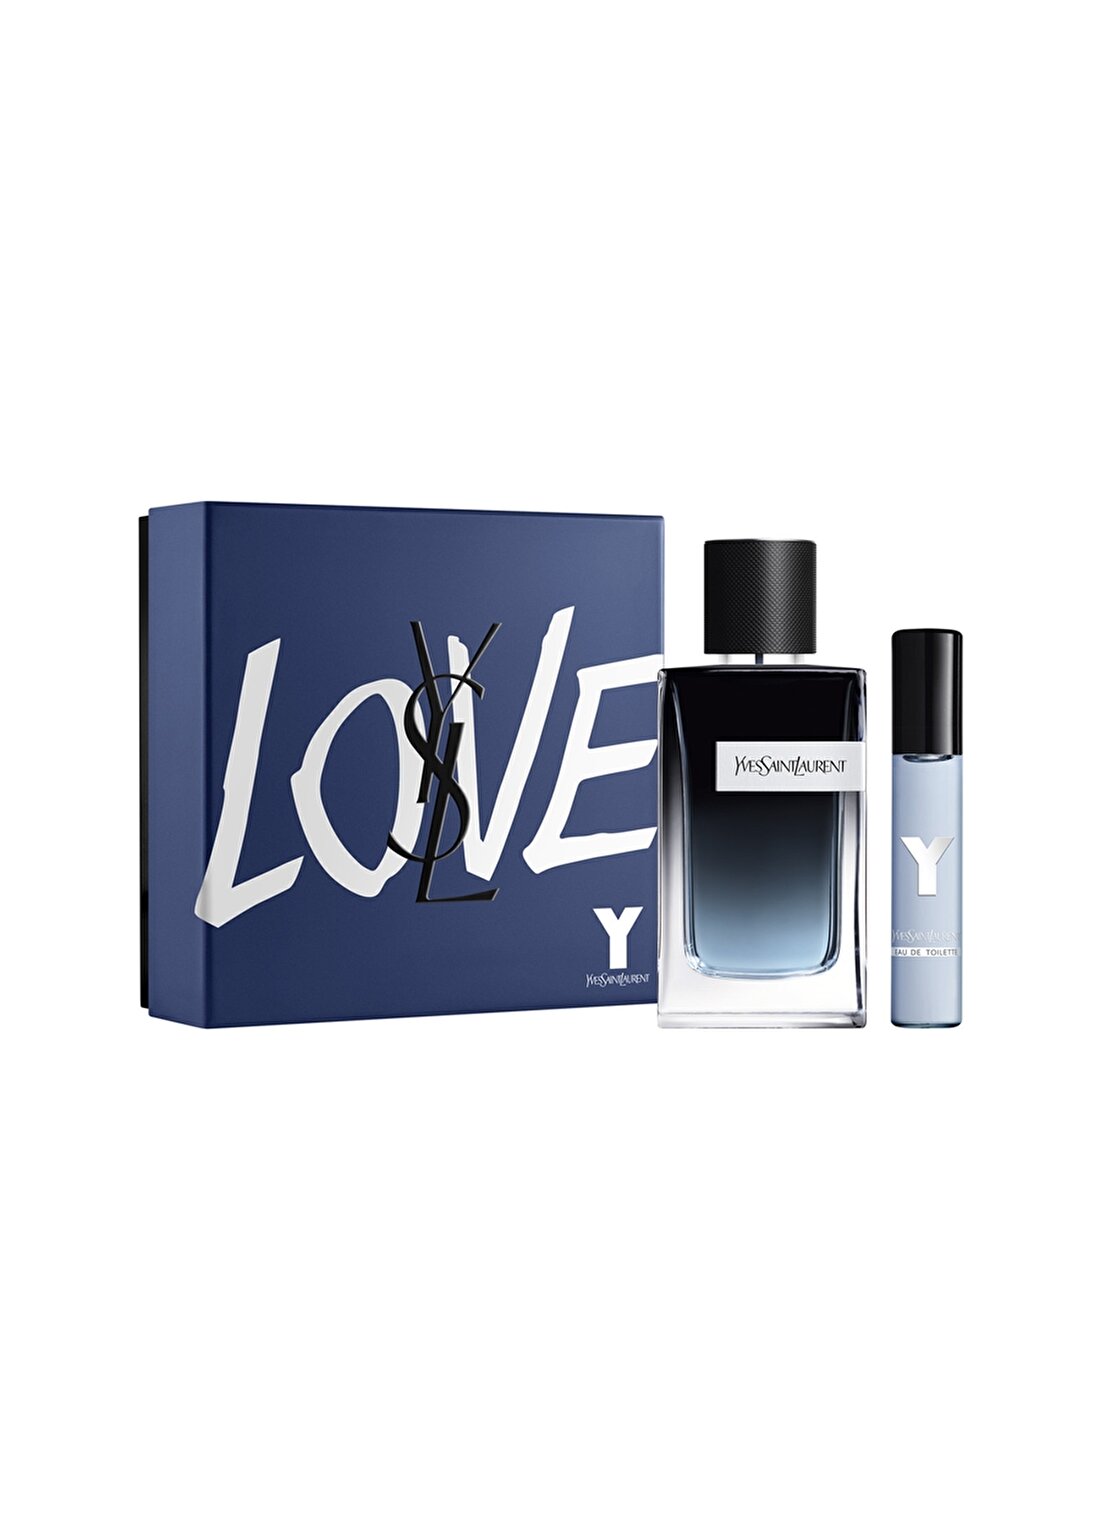 Yves Saint Laurent Edp Erkek Parfüm Seti 100 Ml